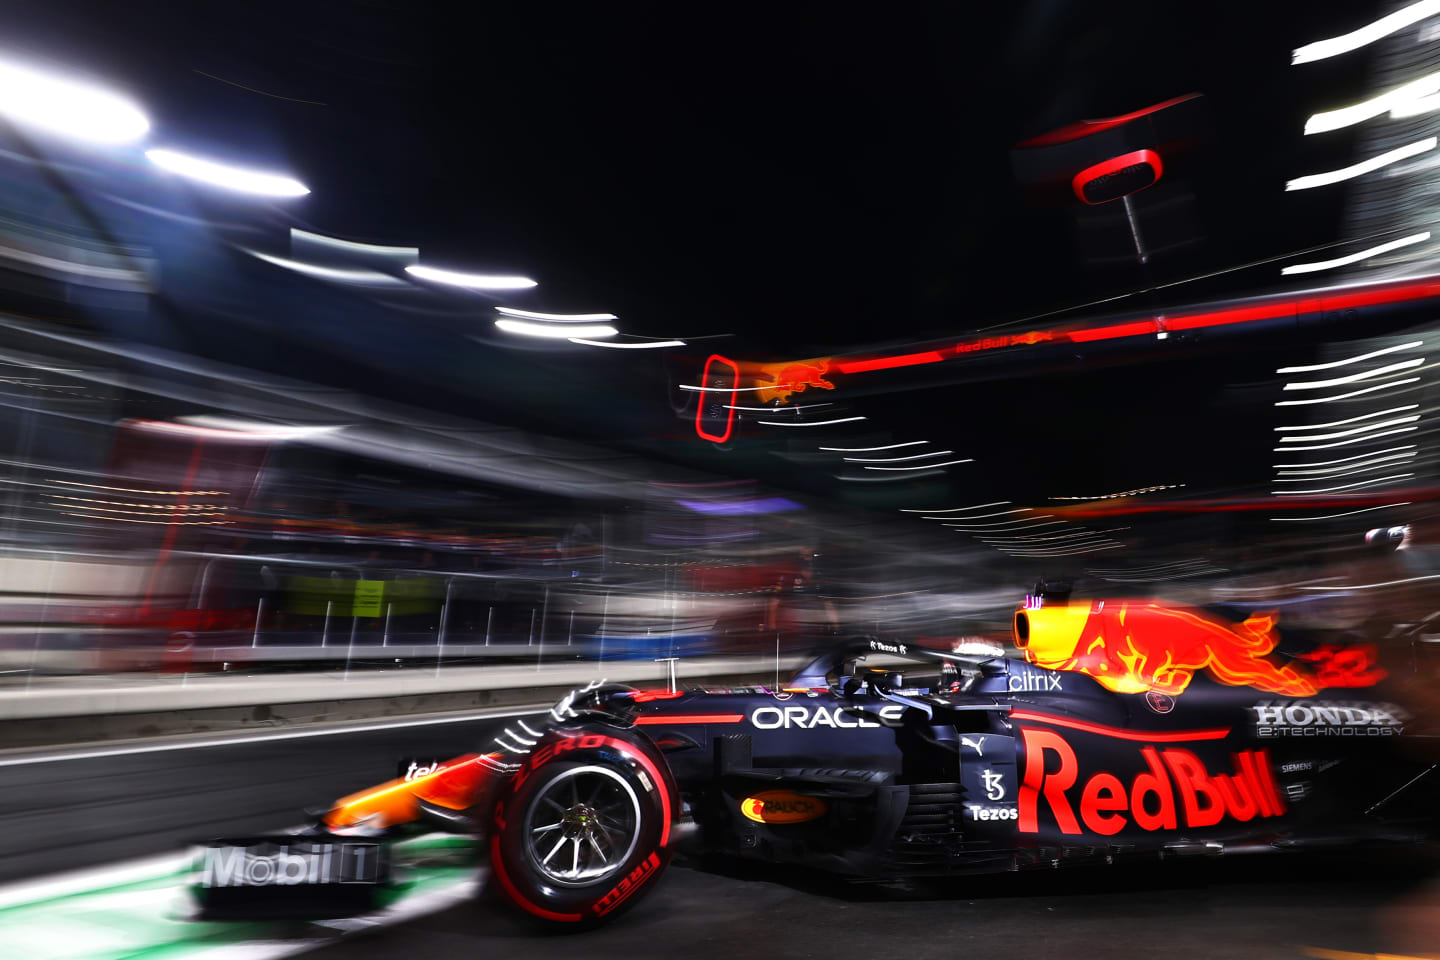 JEDDAH, SAUDI ARABIA - DECEMBER 03: Max Verstappen of the Netherlands driving the (33) Red Bull